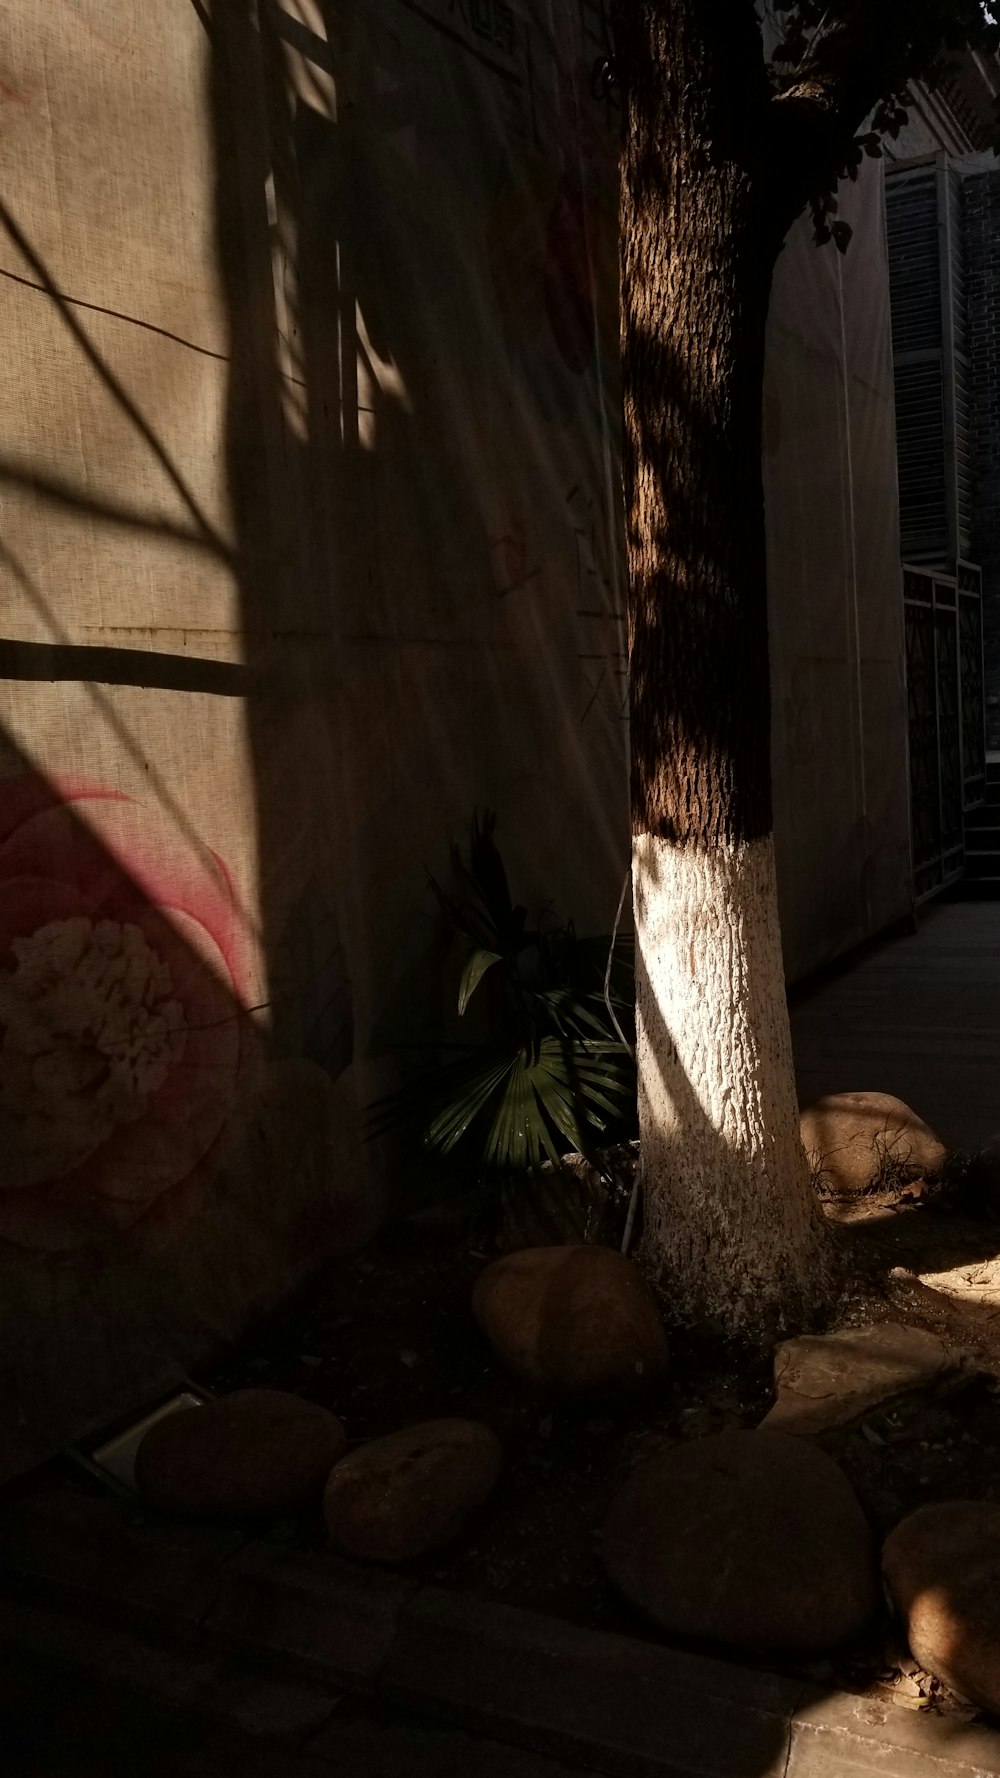 a sombra de uma árvore na lateral de um edifício